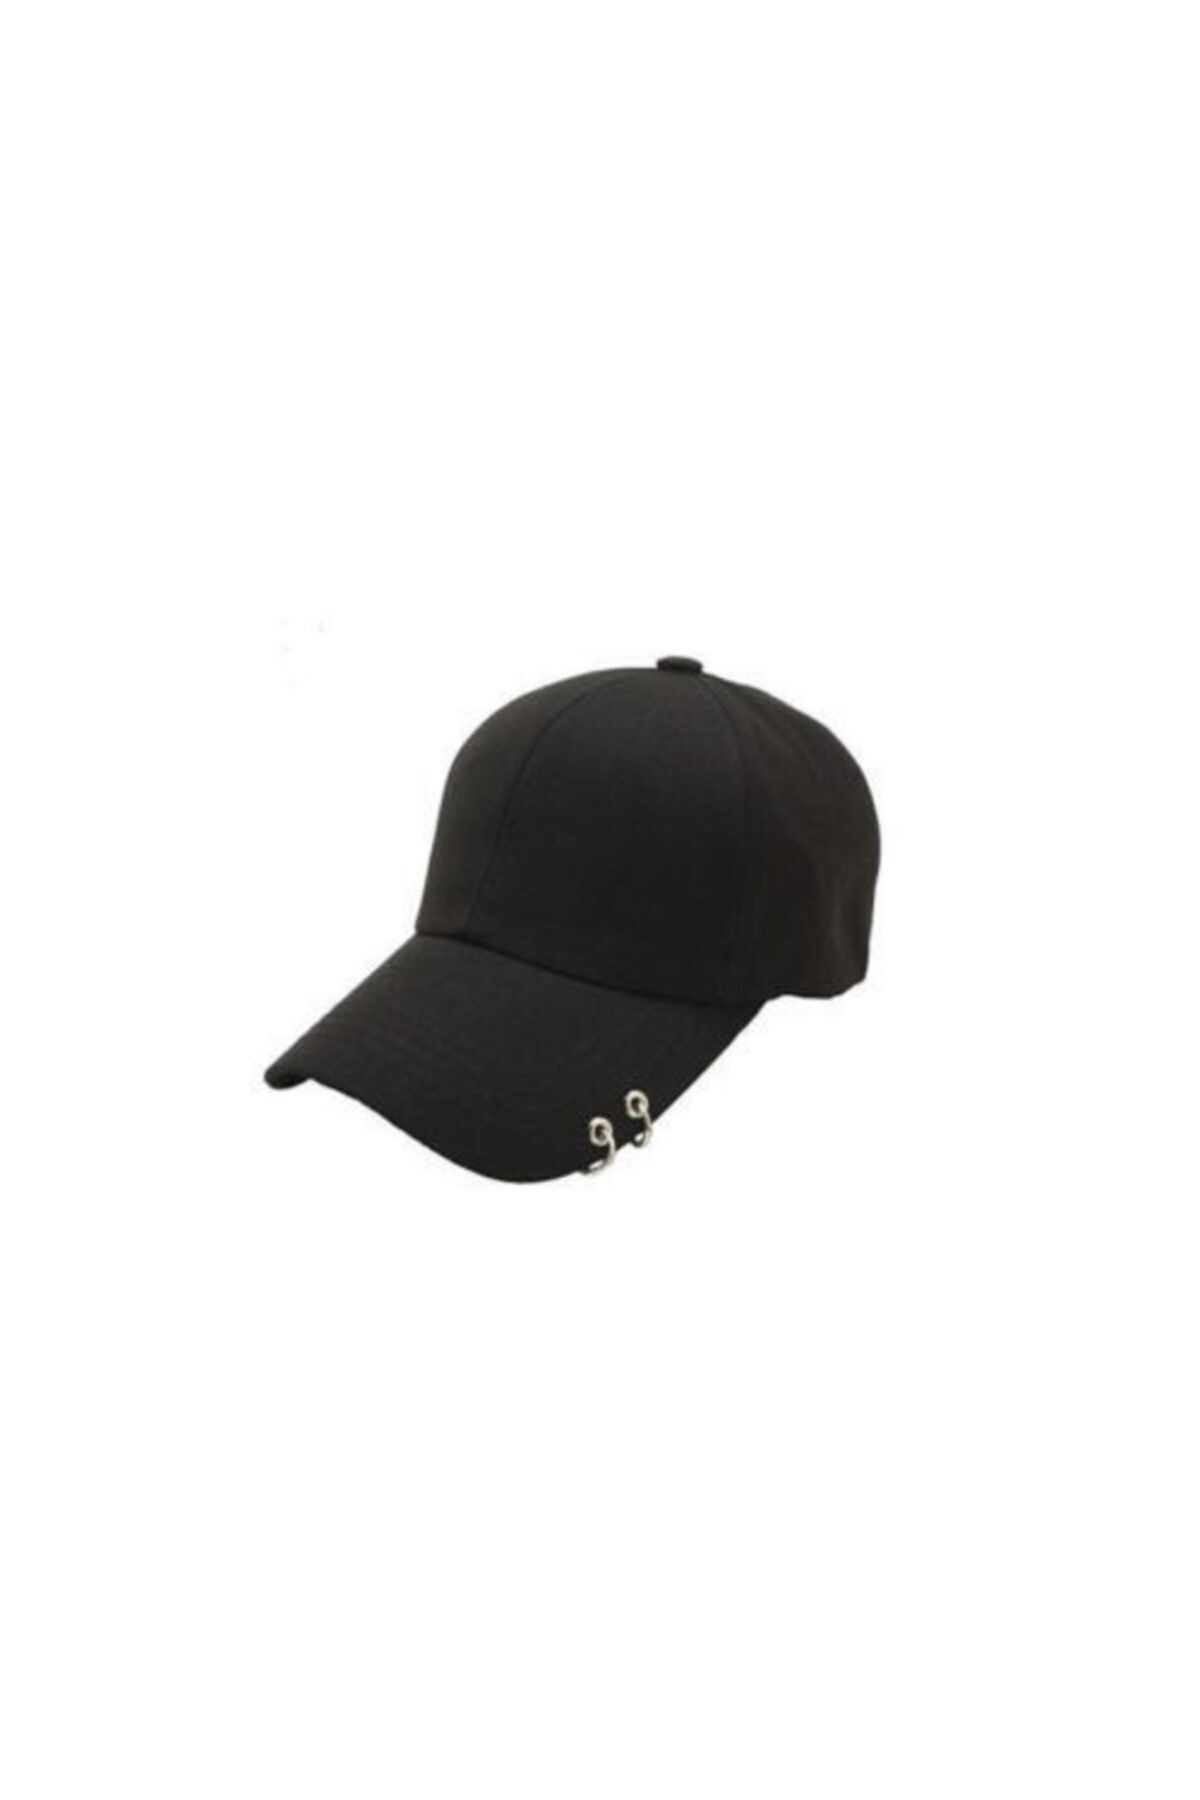 Köstebek Unisex Siyah K-pop Düz Piercingli Şapka